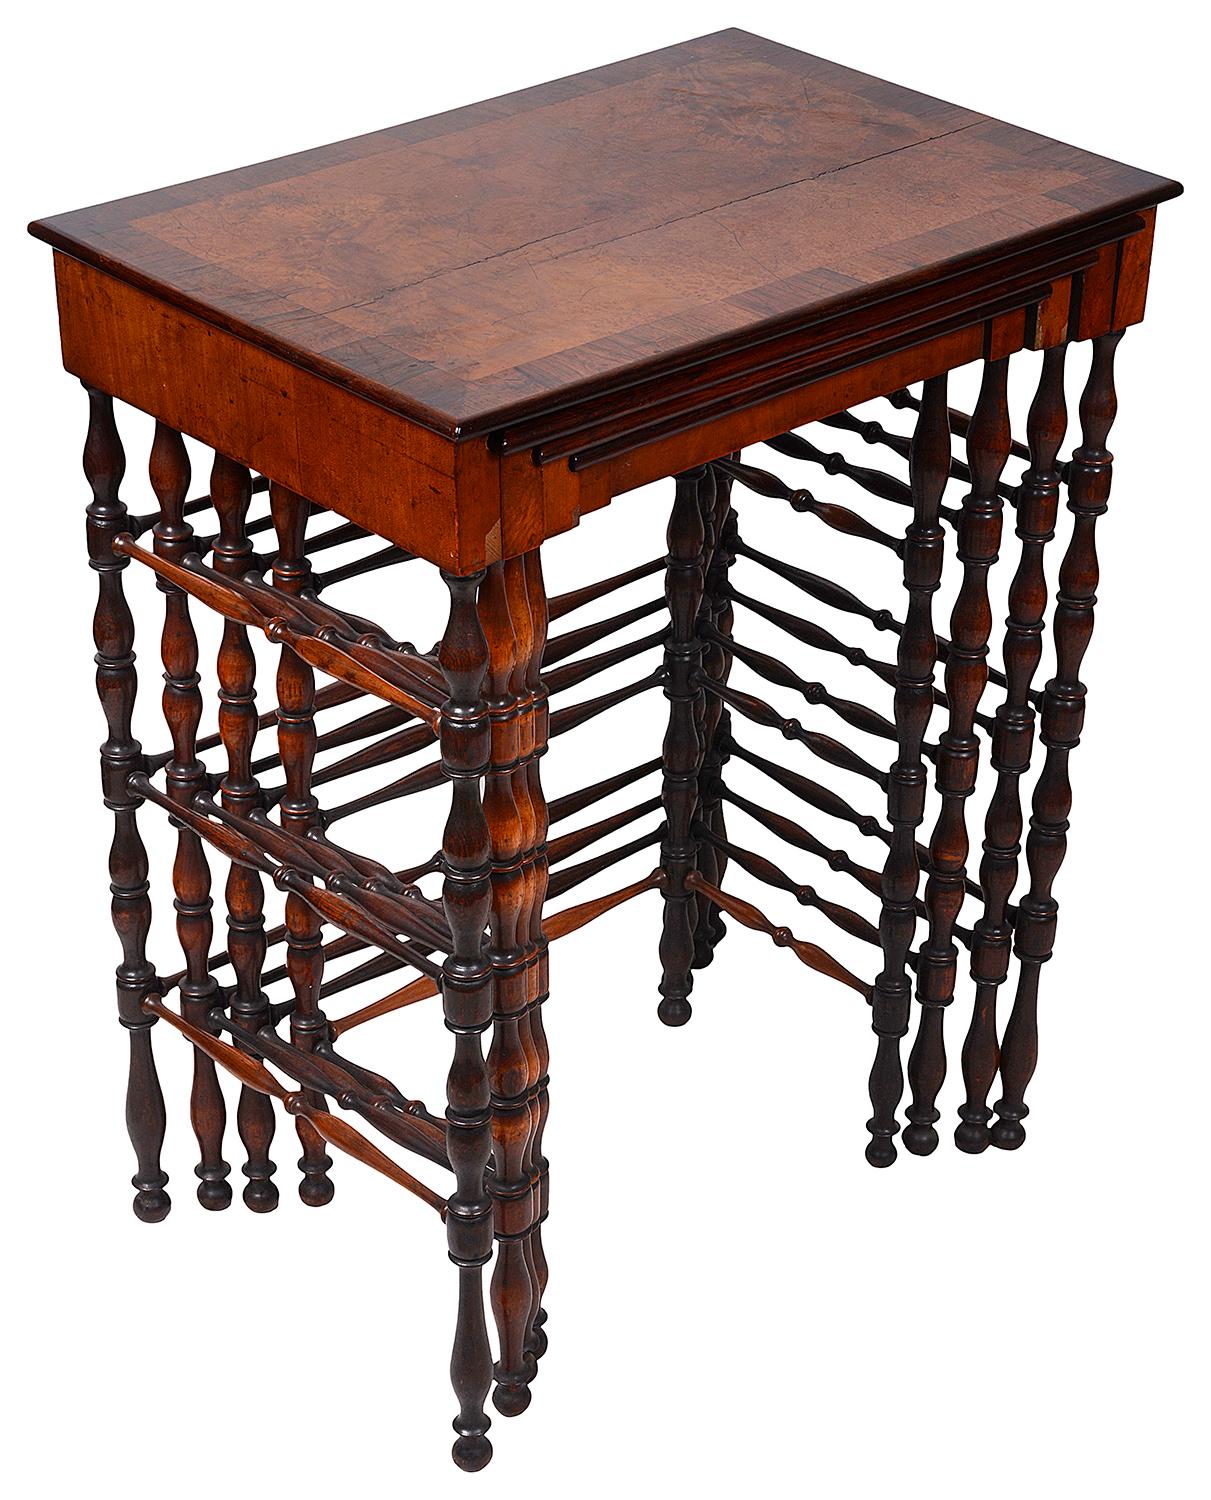 Eine feine Qualität Nest von vier Tischen in verschiedenen Exemplaren Holz furniert auf Mahagoni, ein Tisch ist ein Spieltisch, auf Ring gedreht unterstützt und Bahren zwischen.
Nach dem Vorbild von Gillows.